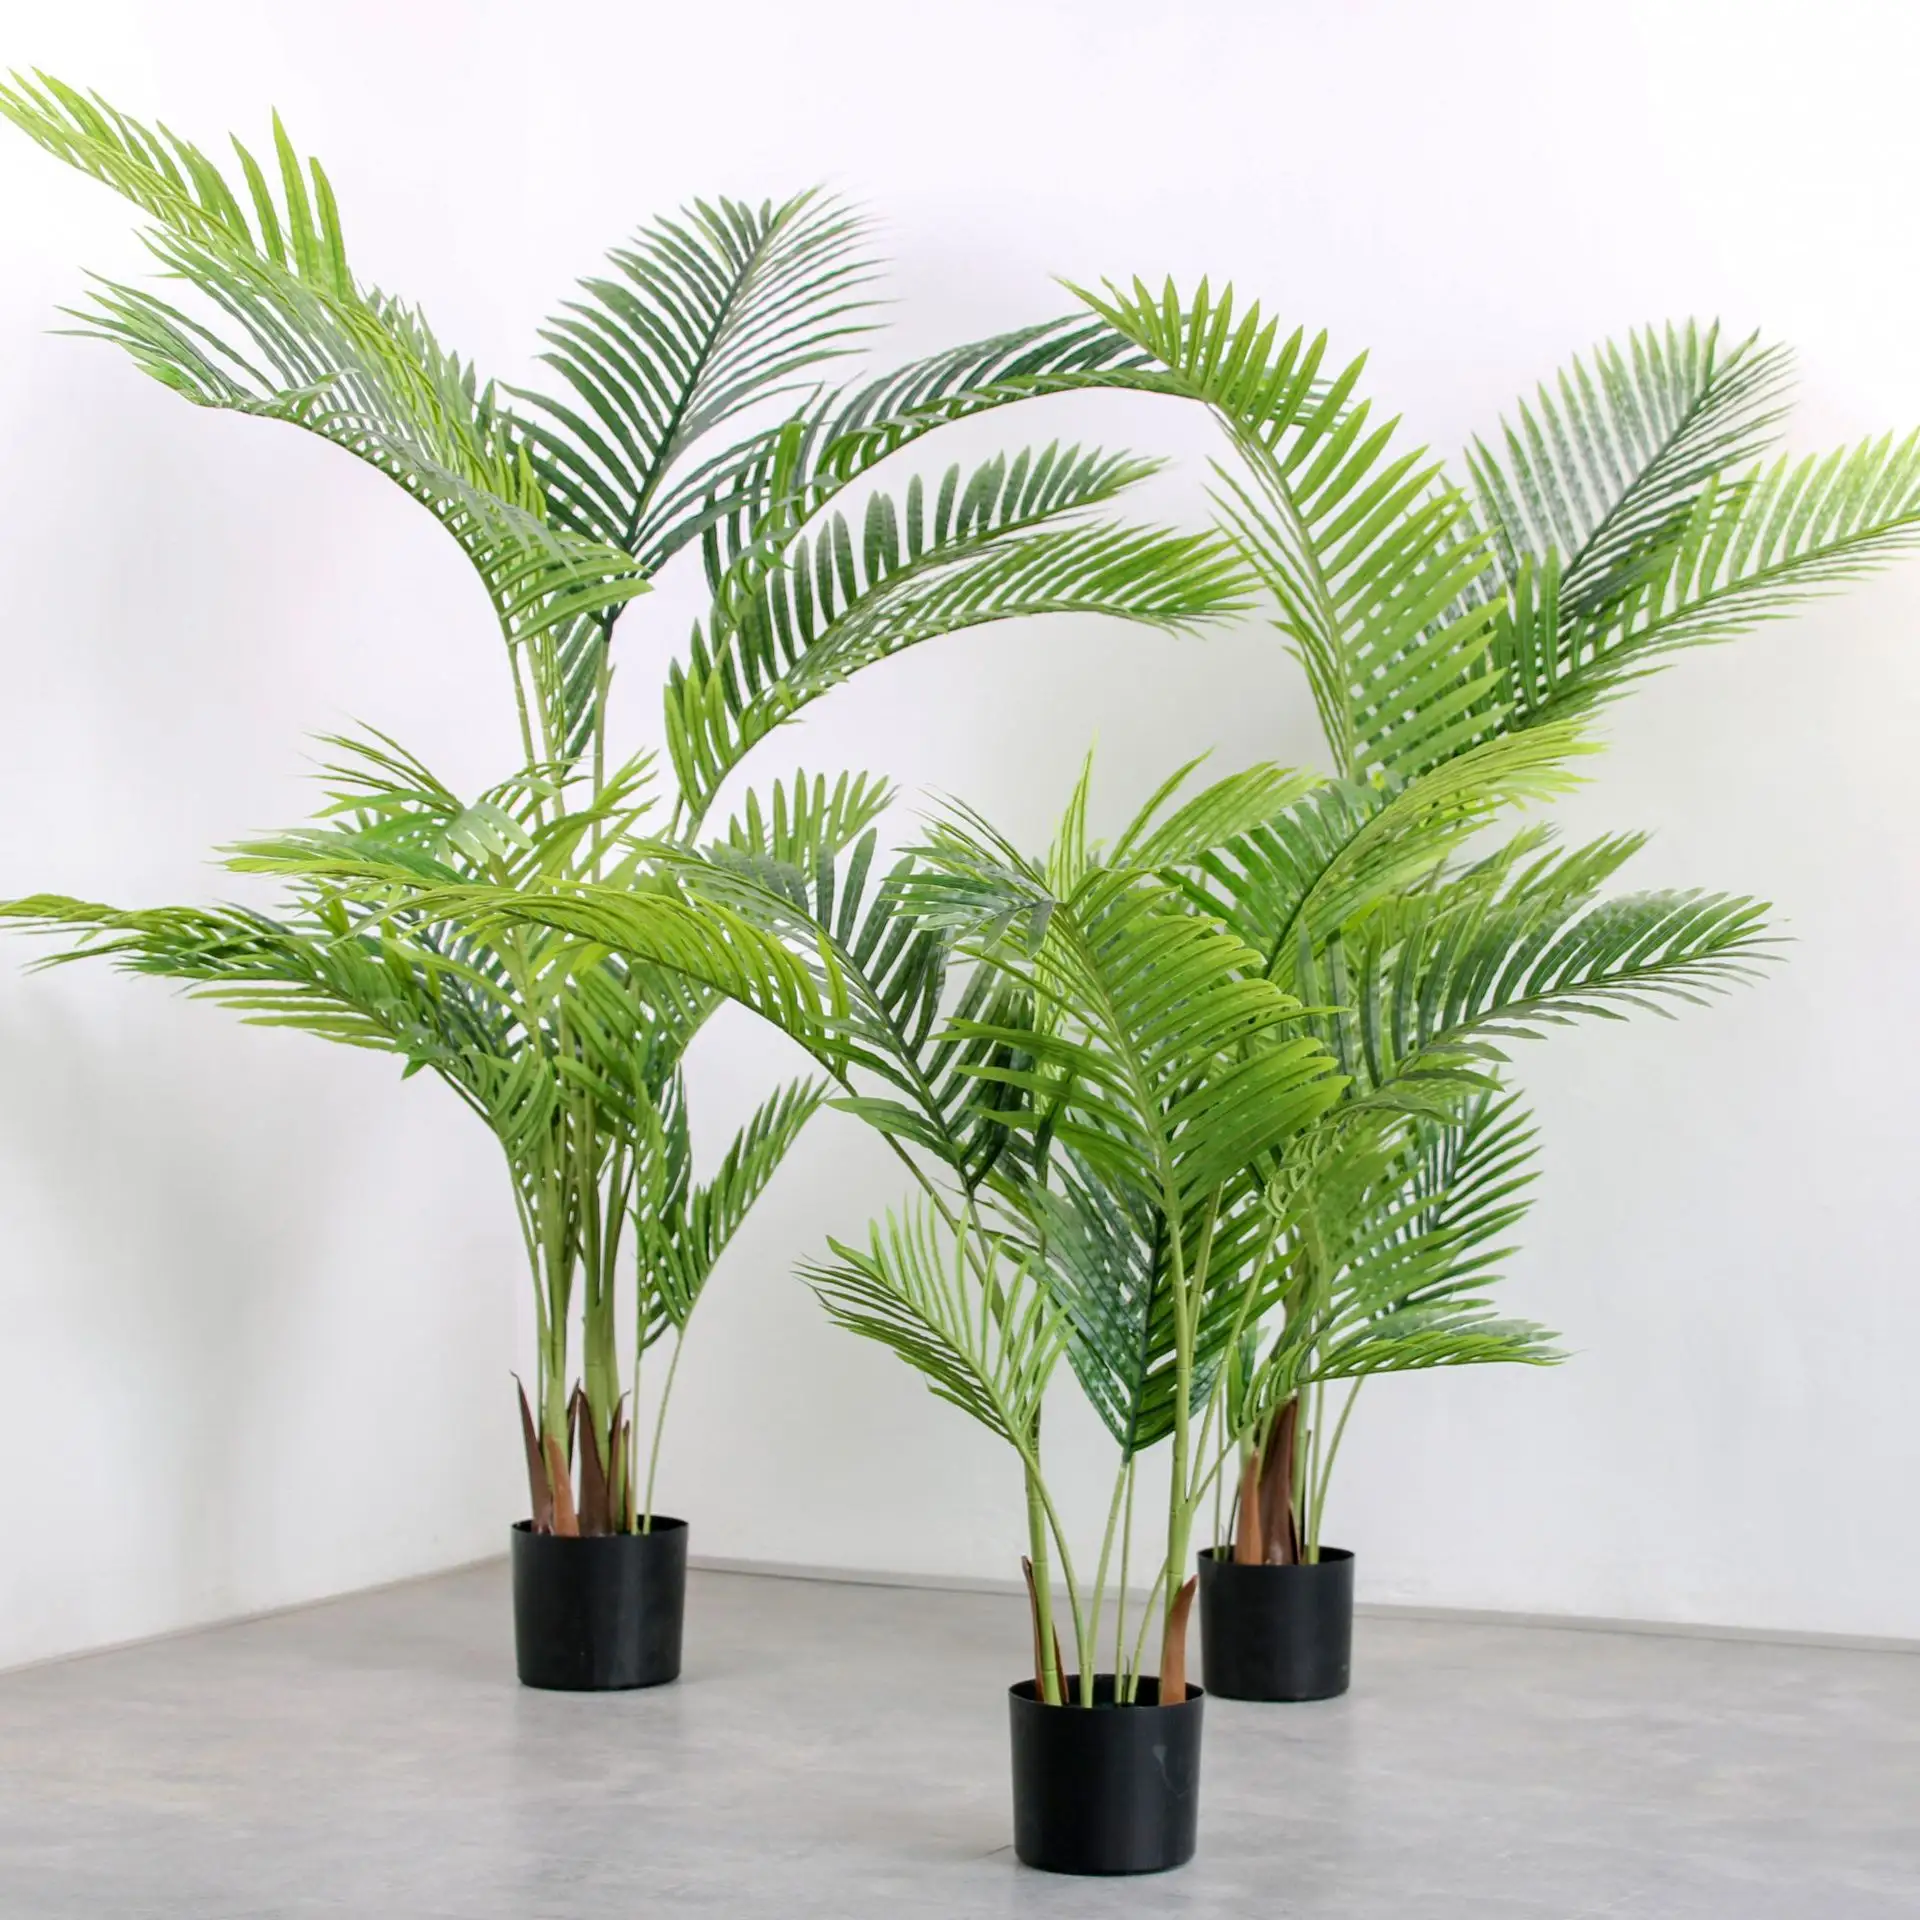 PLSQ1005-110/140/160/180/200CM yapay bitki kapalı dekoratif palmiye ağacı Areca palmiye ev için dekorasyon